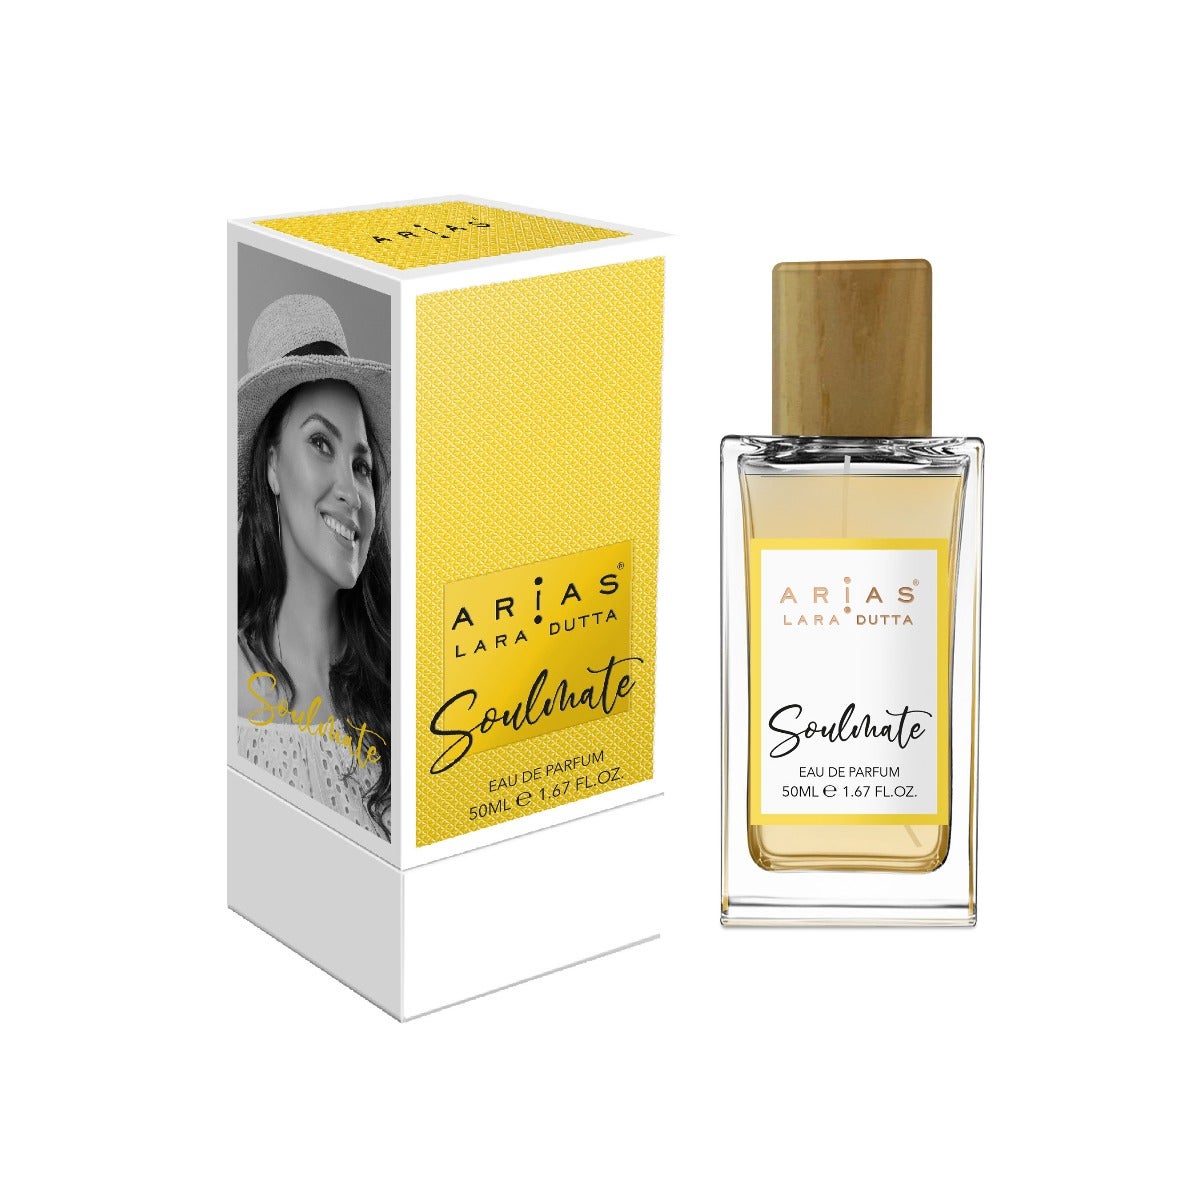 Arias Eau de parfum Soulmate 50ml